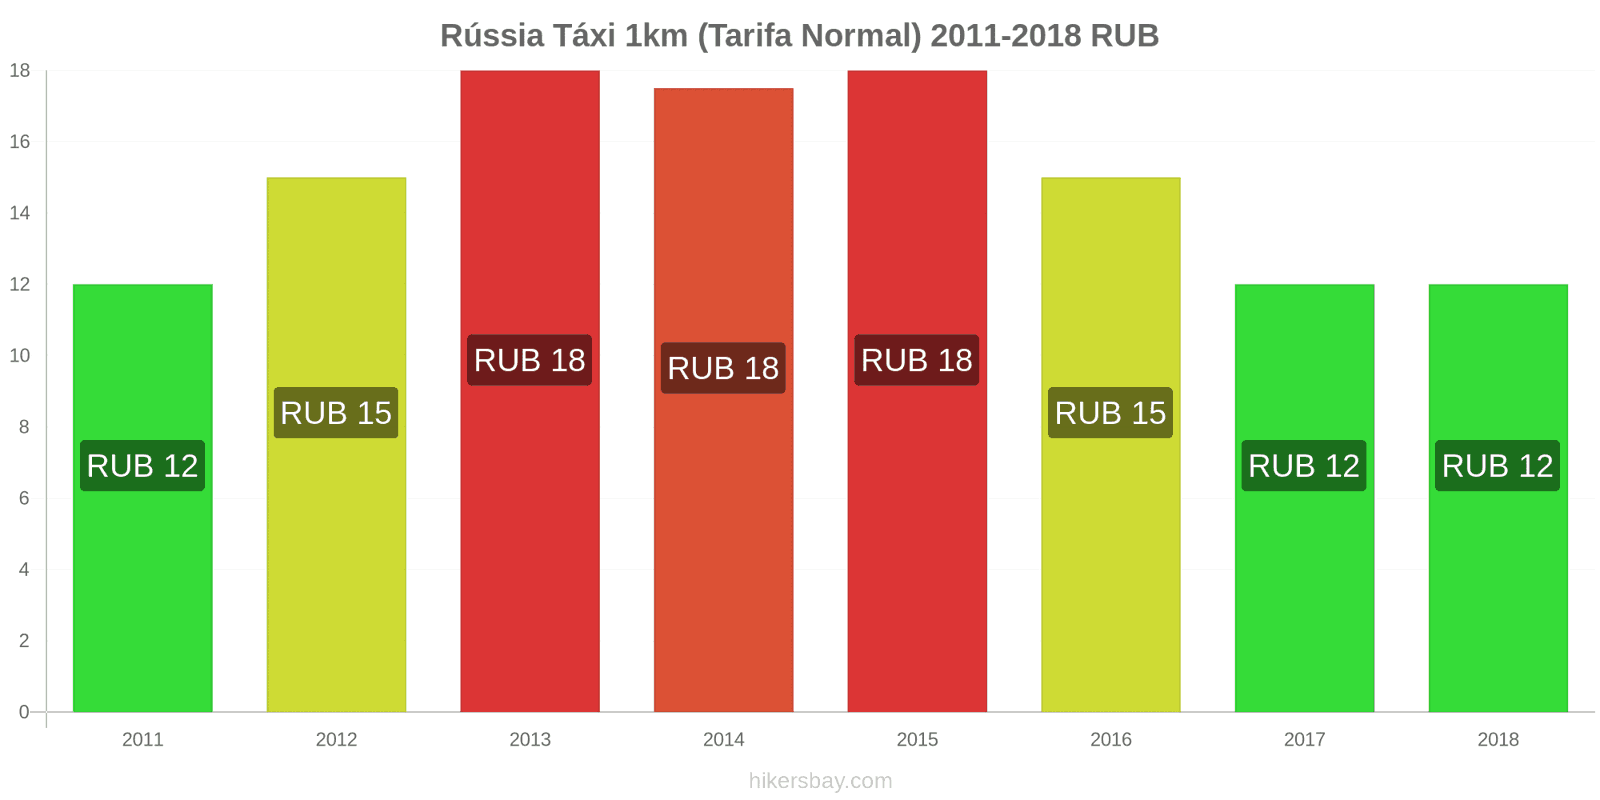 Rússia mudanças de preços Táxi 1km (Tarifa Normal) hikersbay.com